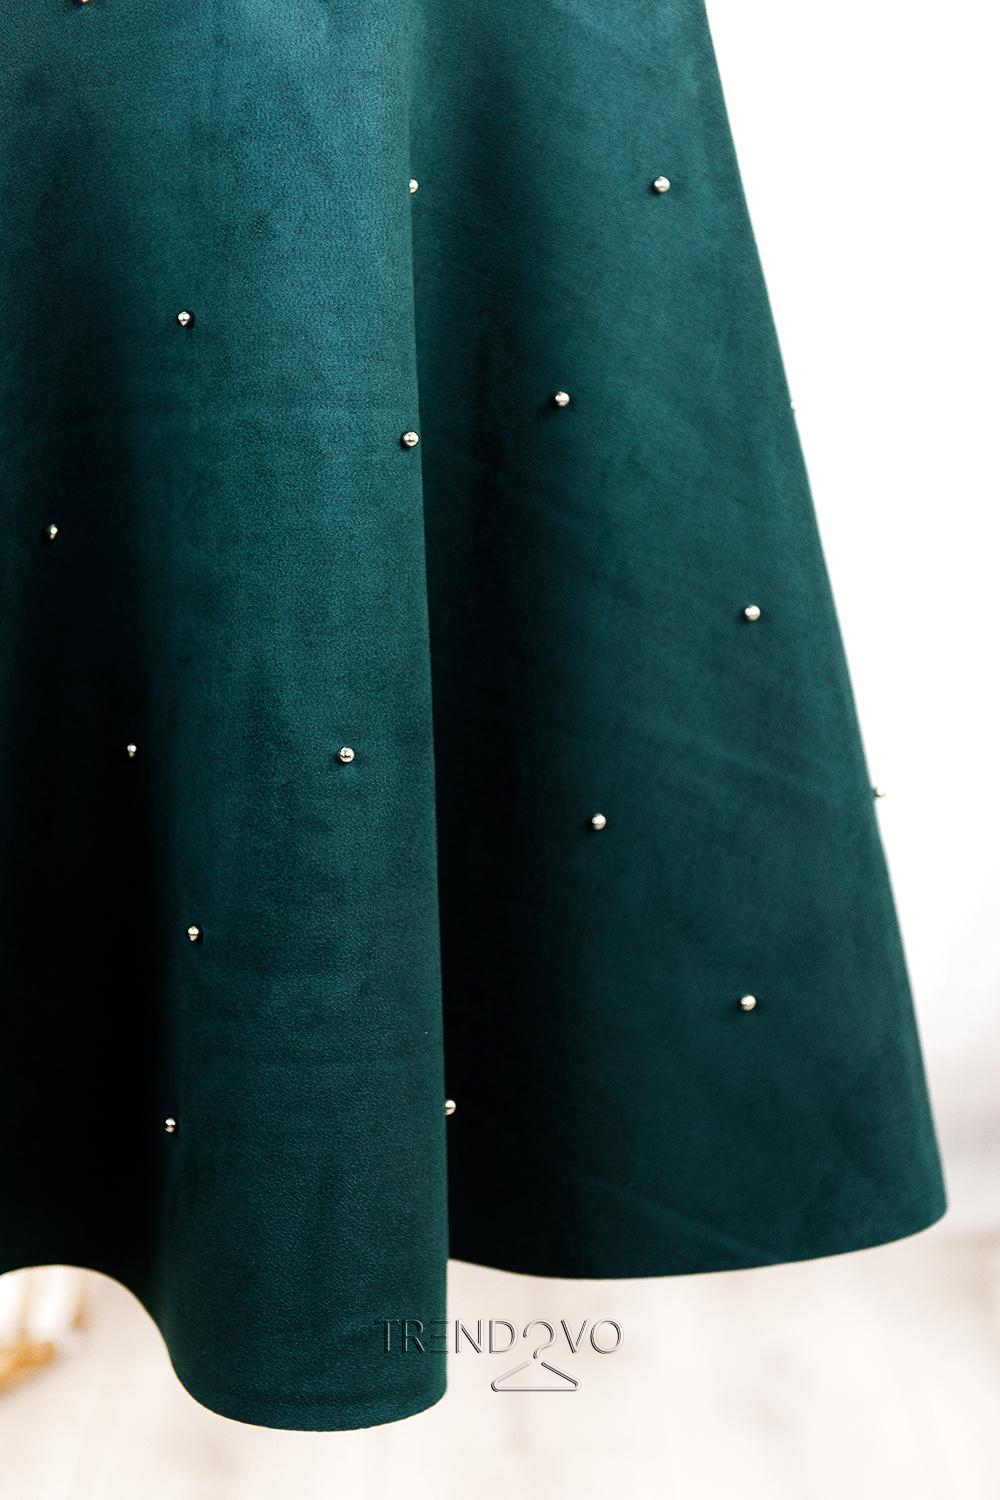 Zelené šaty bez rukávů s perličkami